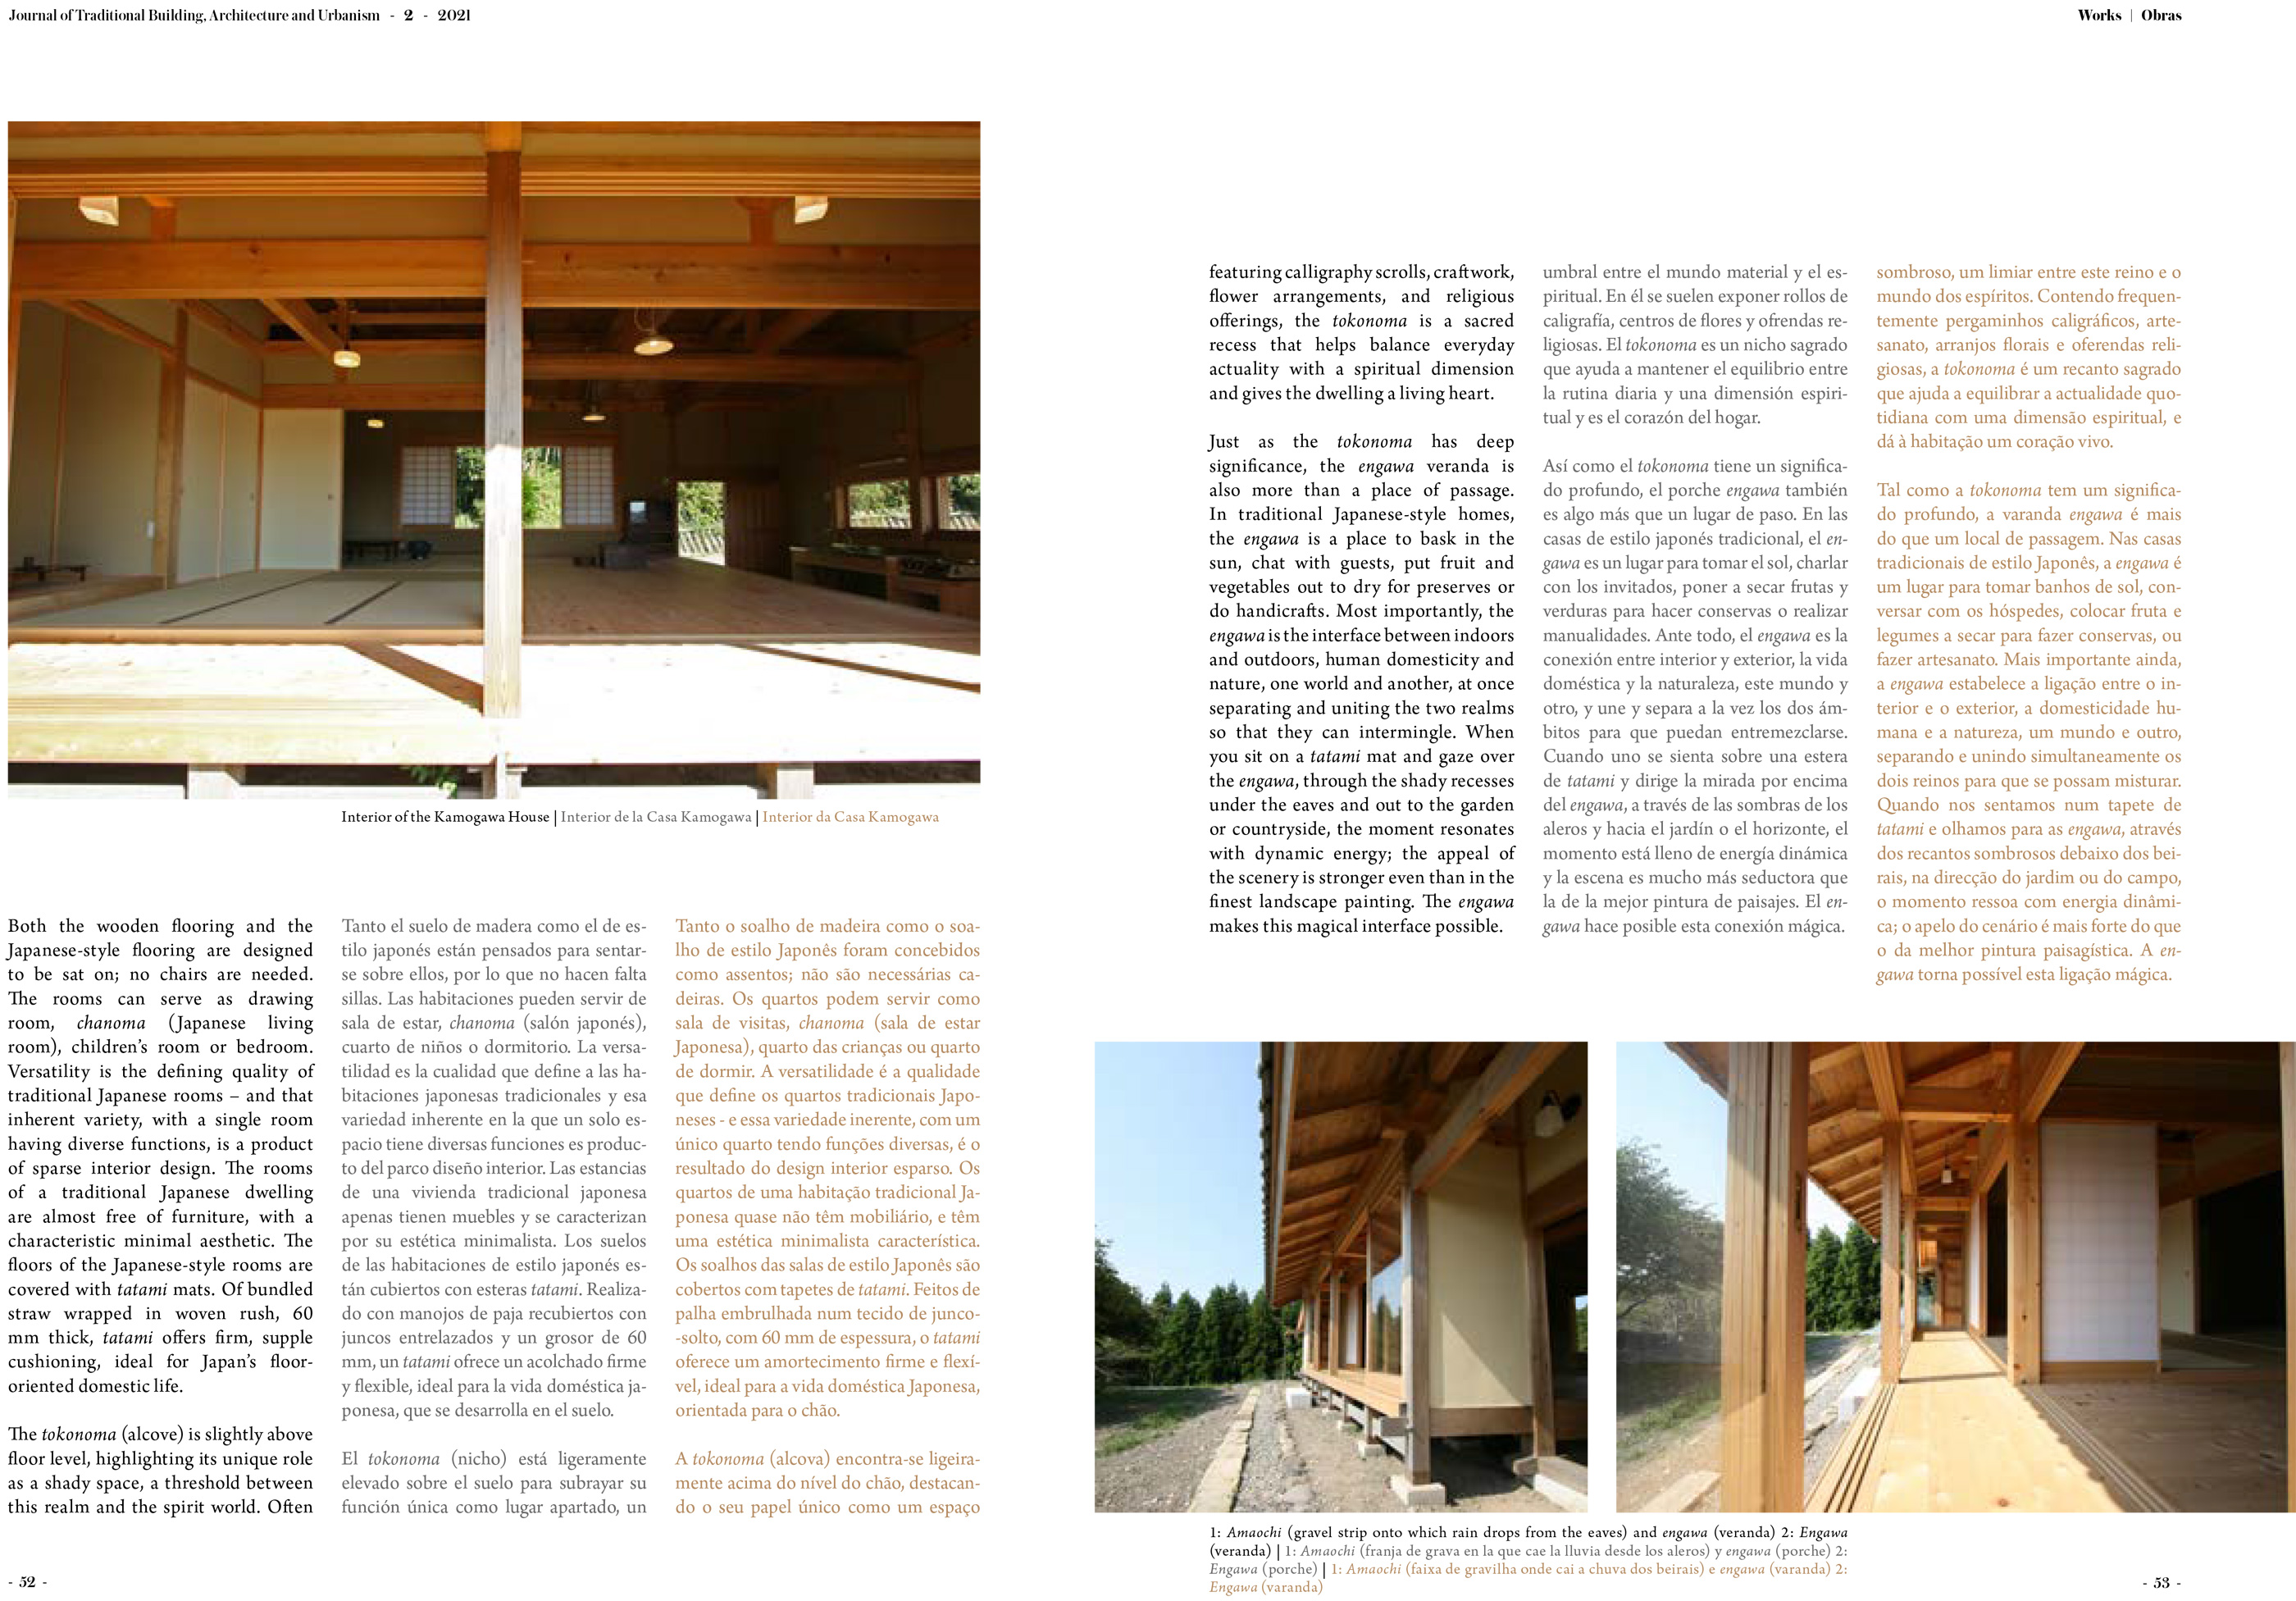 惺々舎 深田真論文 Journal of Traditional Building, Architecture and Urbanism